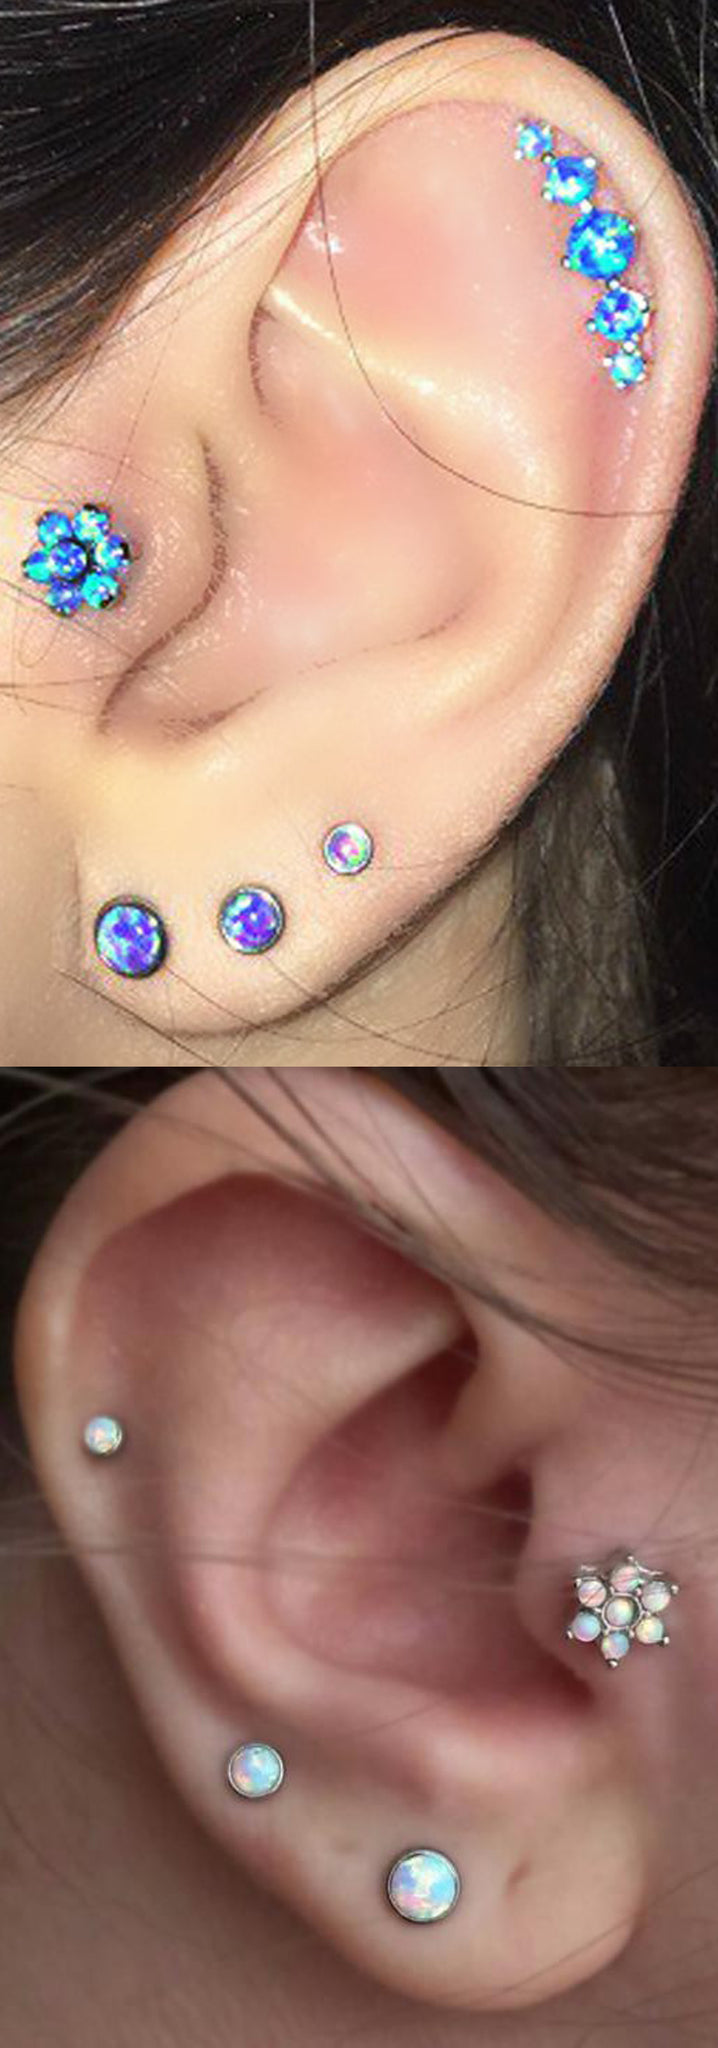 Unique Multiple Ear Piercing Ideas - Opal Tragus Flower Stud - Double Triple Lobe Earrings - Cartilage Jewelry -  MyBodiArt.com 